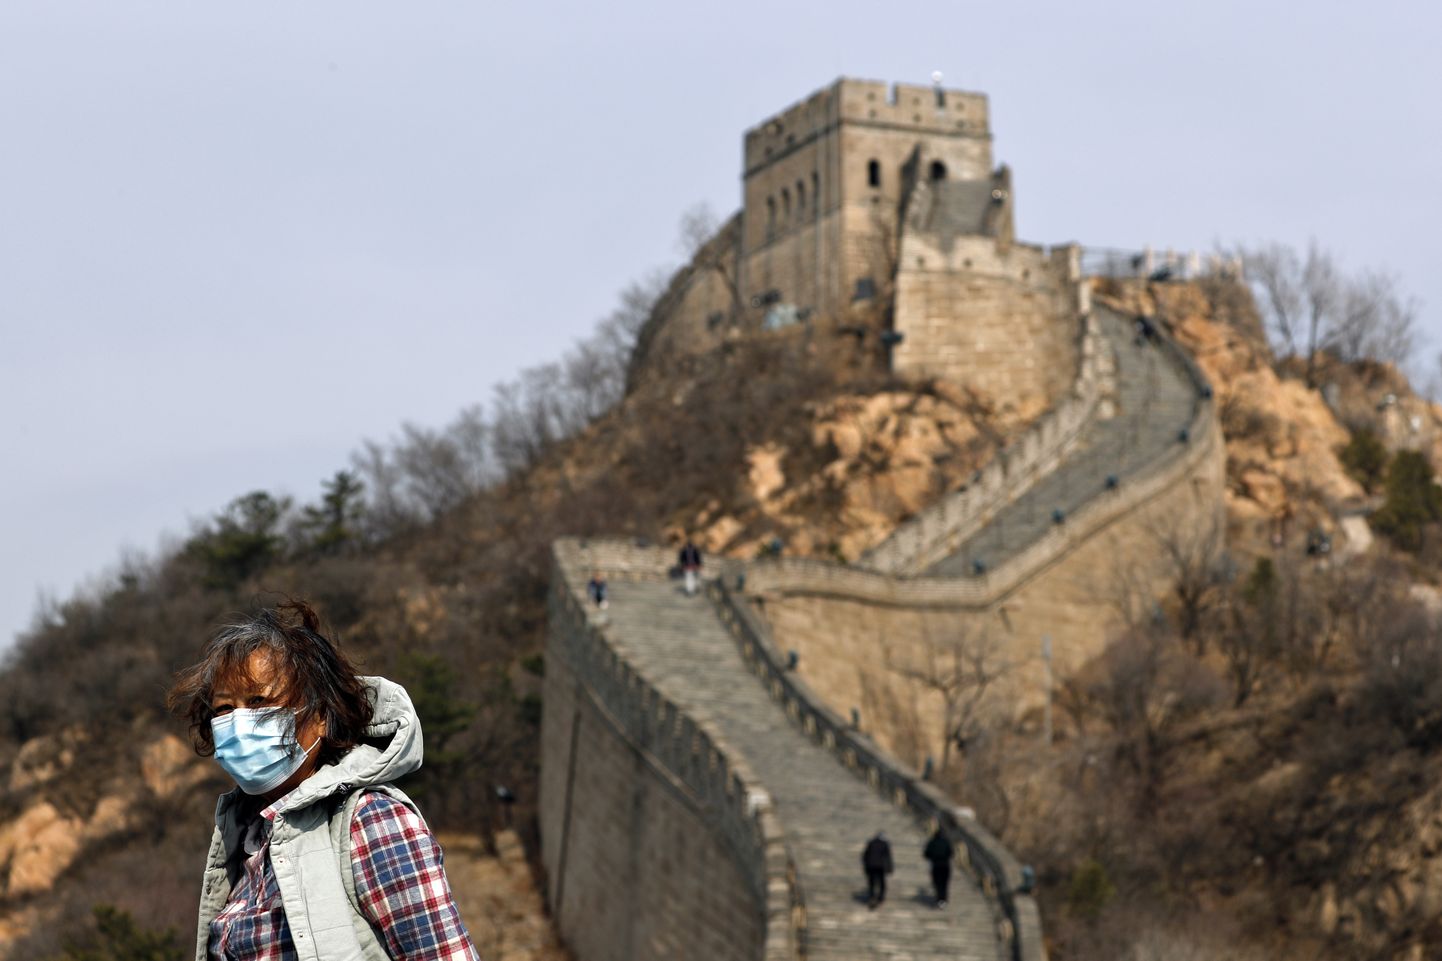 Hiinas on mitmed turismipaigad taas avatud, kaasa arvatud lõik Suurest Hiina müürist